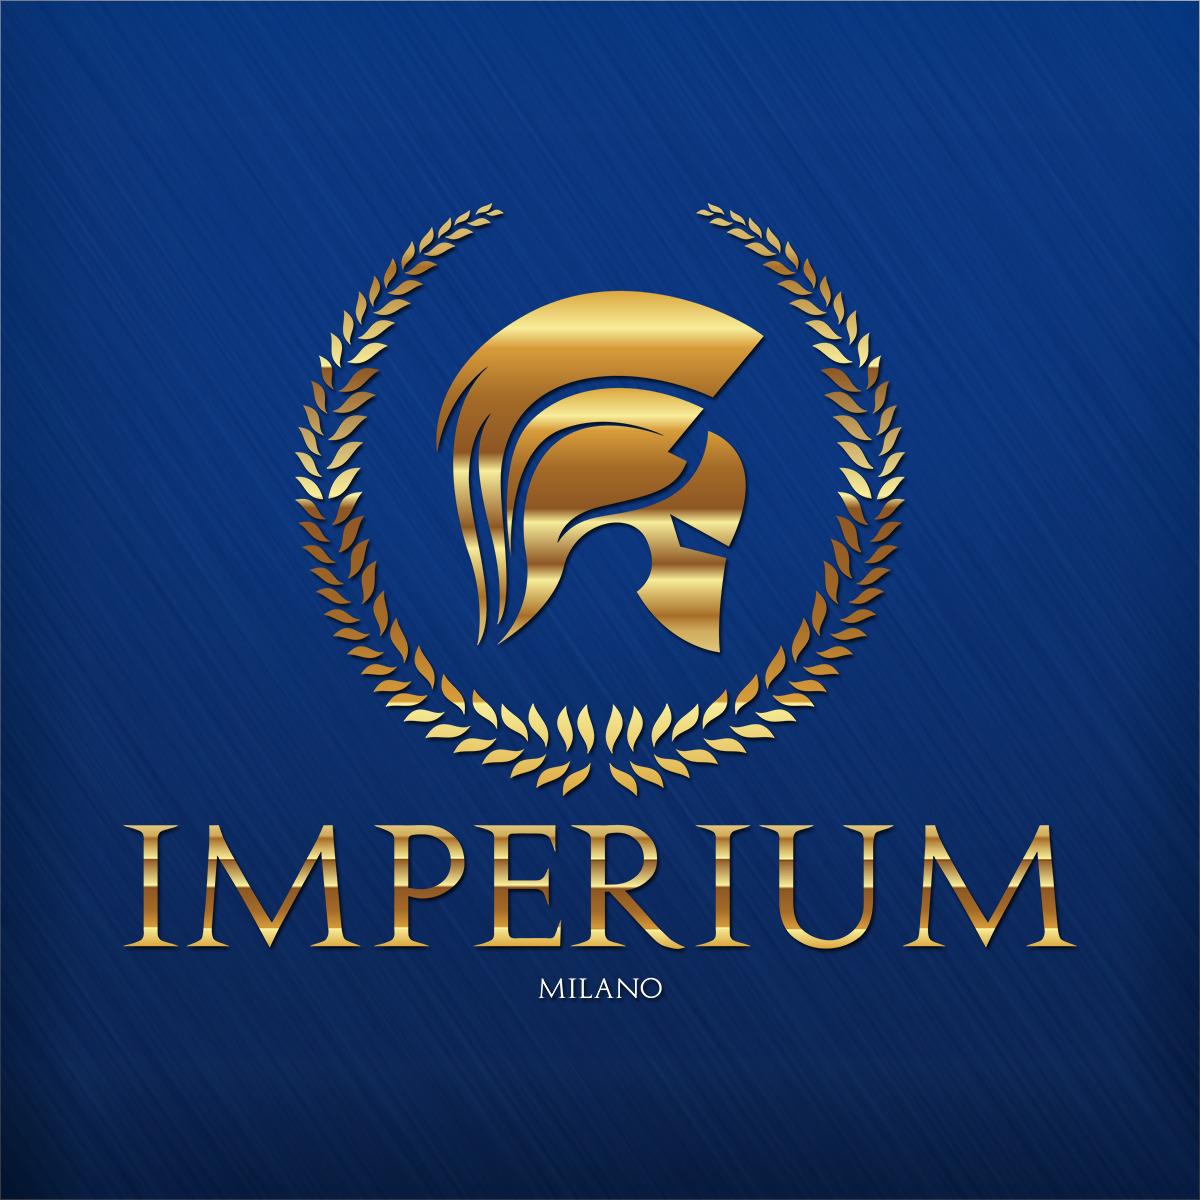 Imperium Room Milano